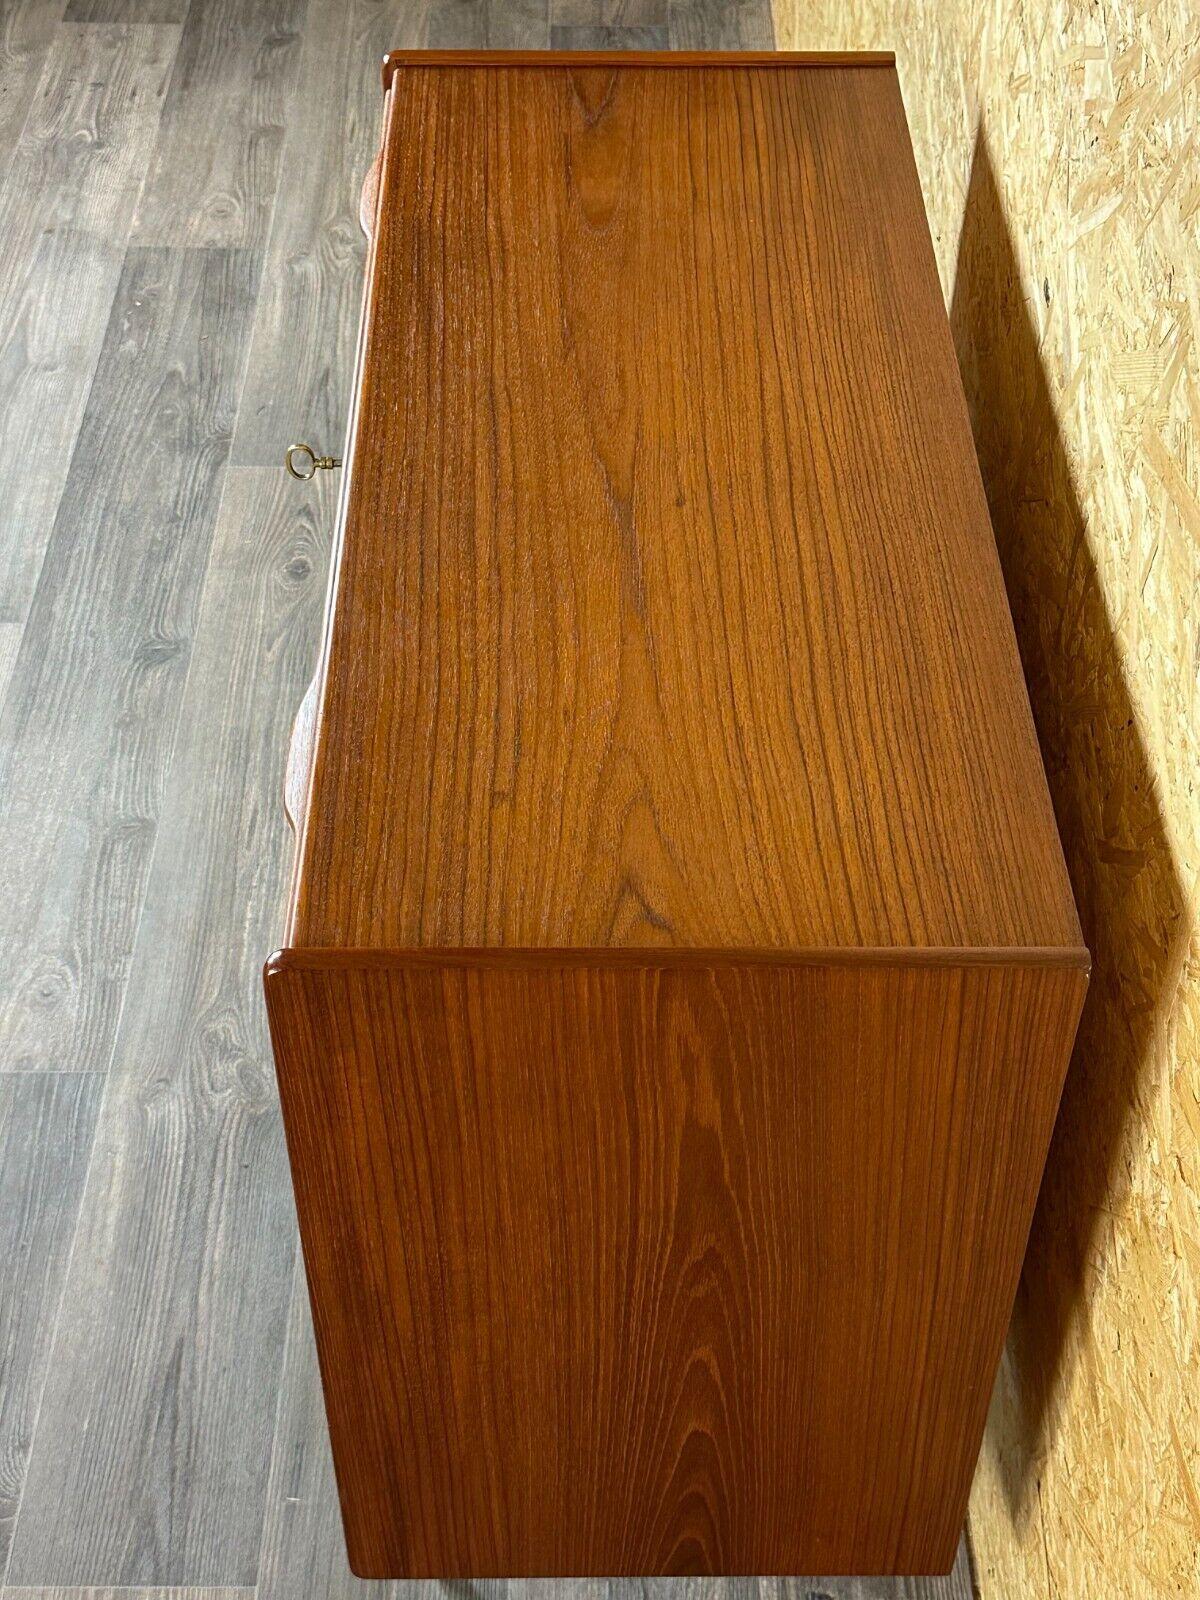 60s 70s teak sideboard chest of drawers cabinet Danish Modern Design Denmark 6